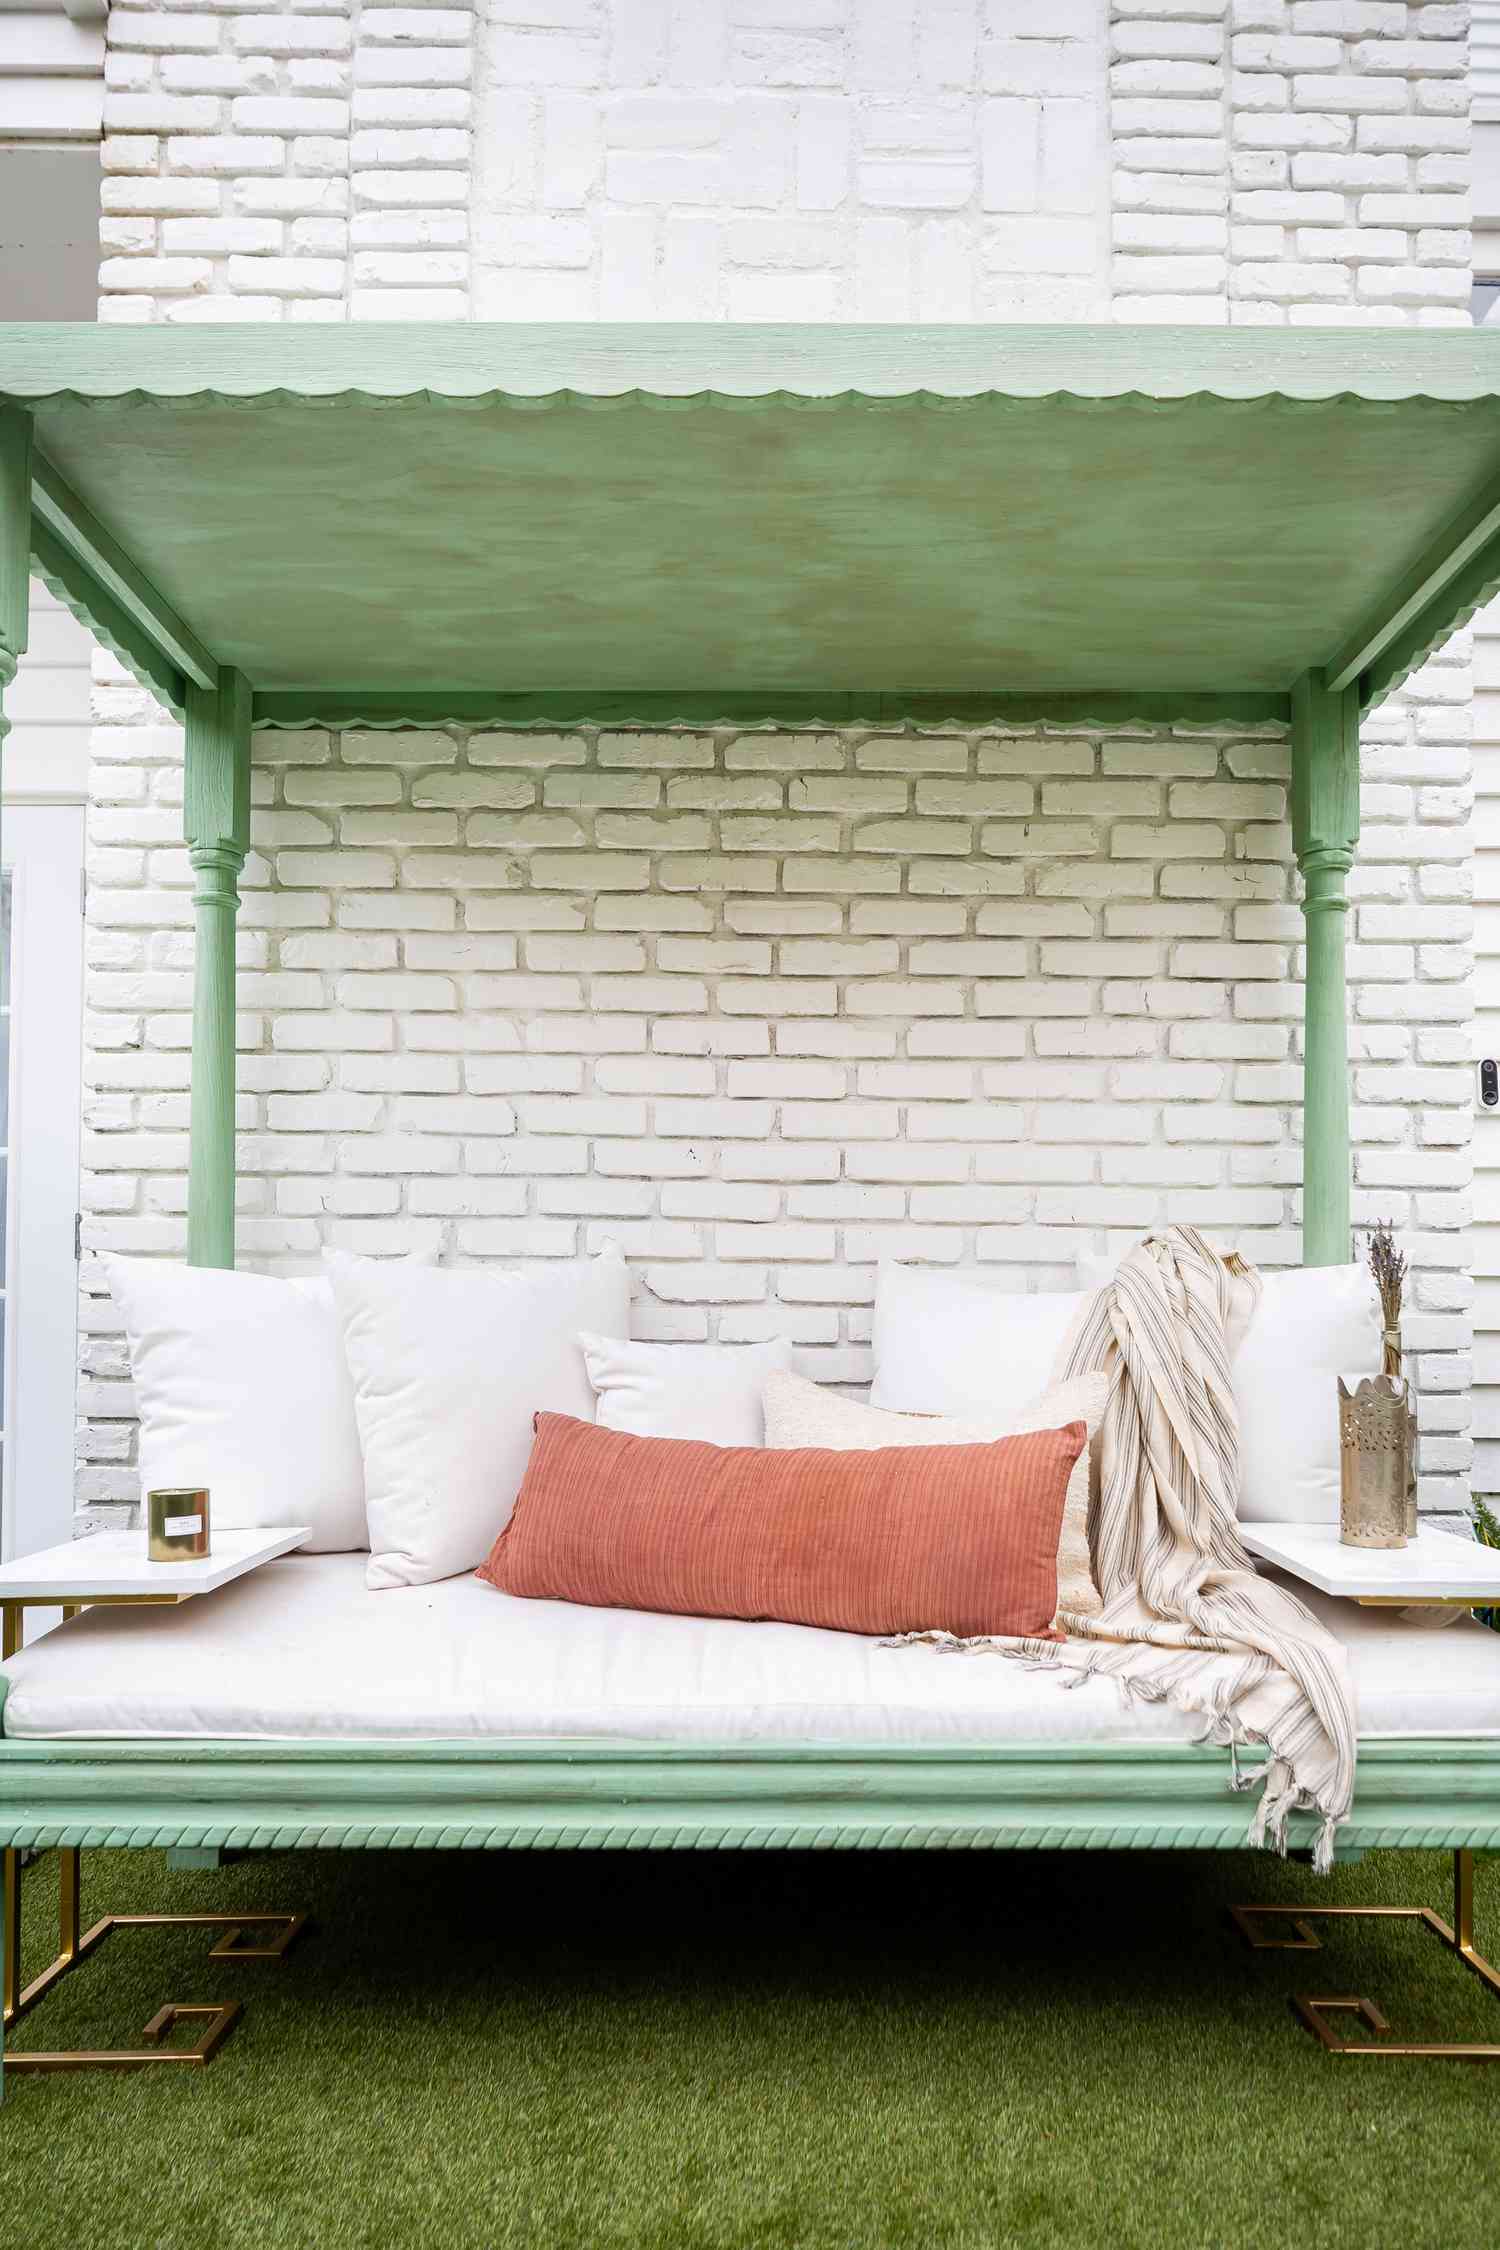 Una cama de patio pintada en verde apagado. 